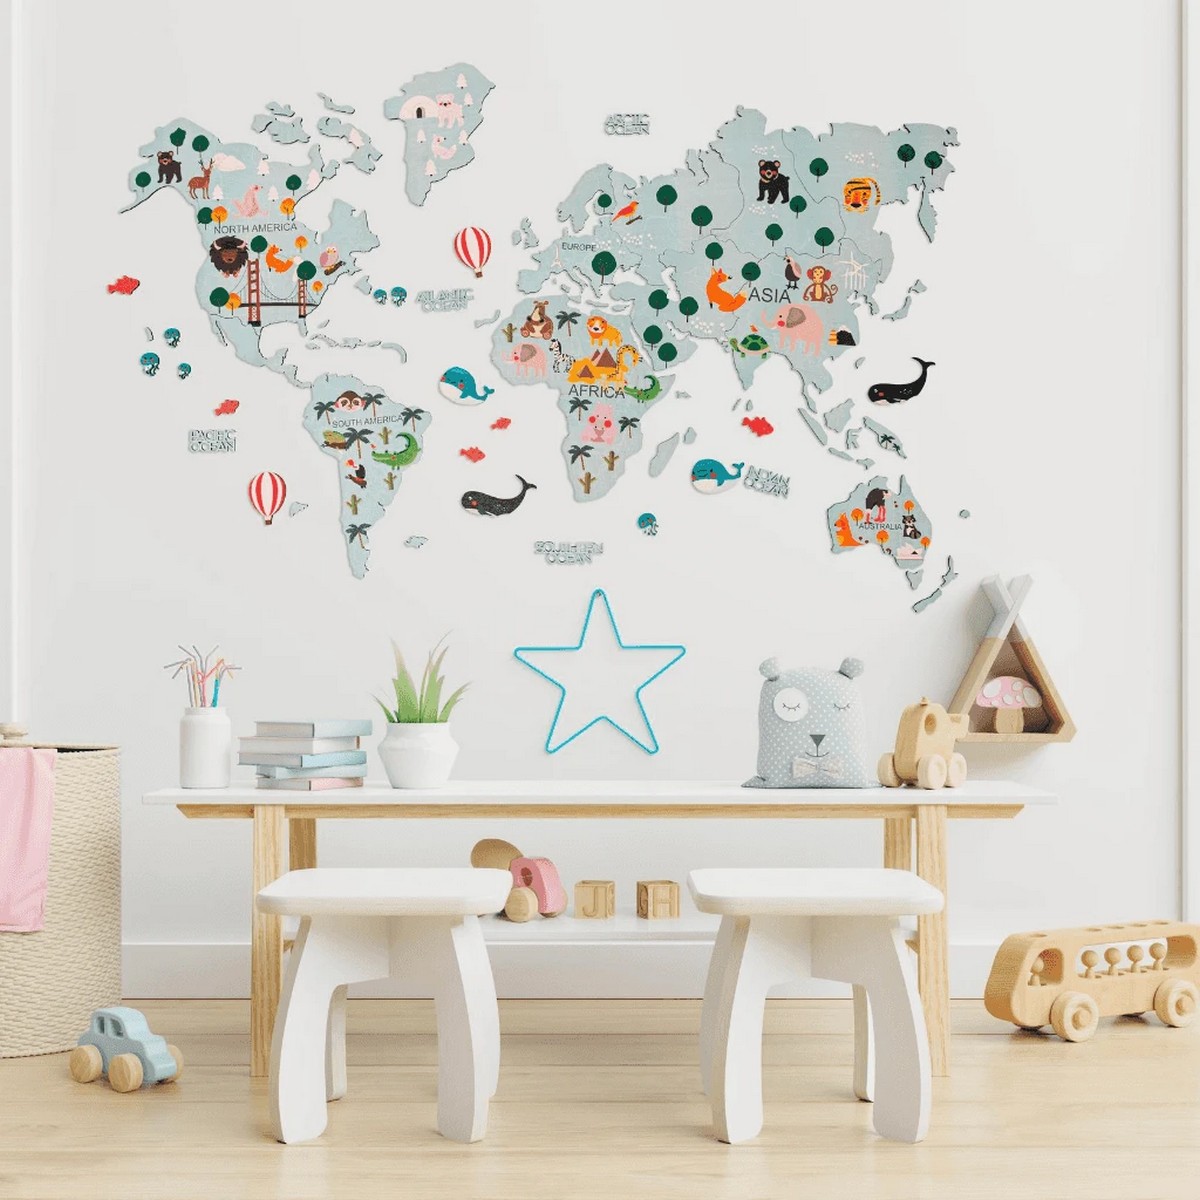 Peta dunia untuk anak-anak